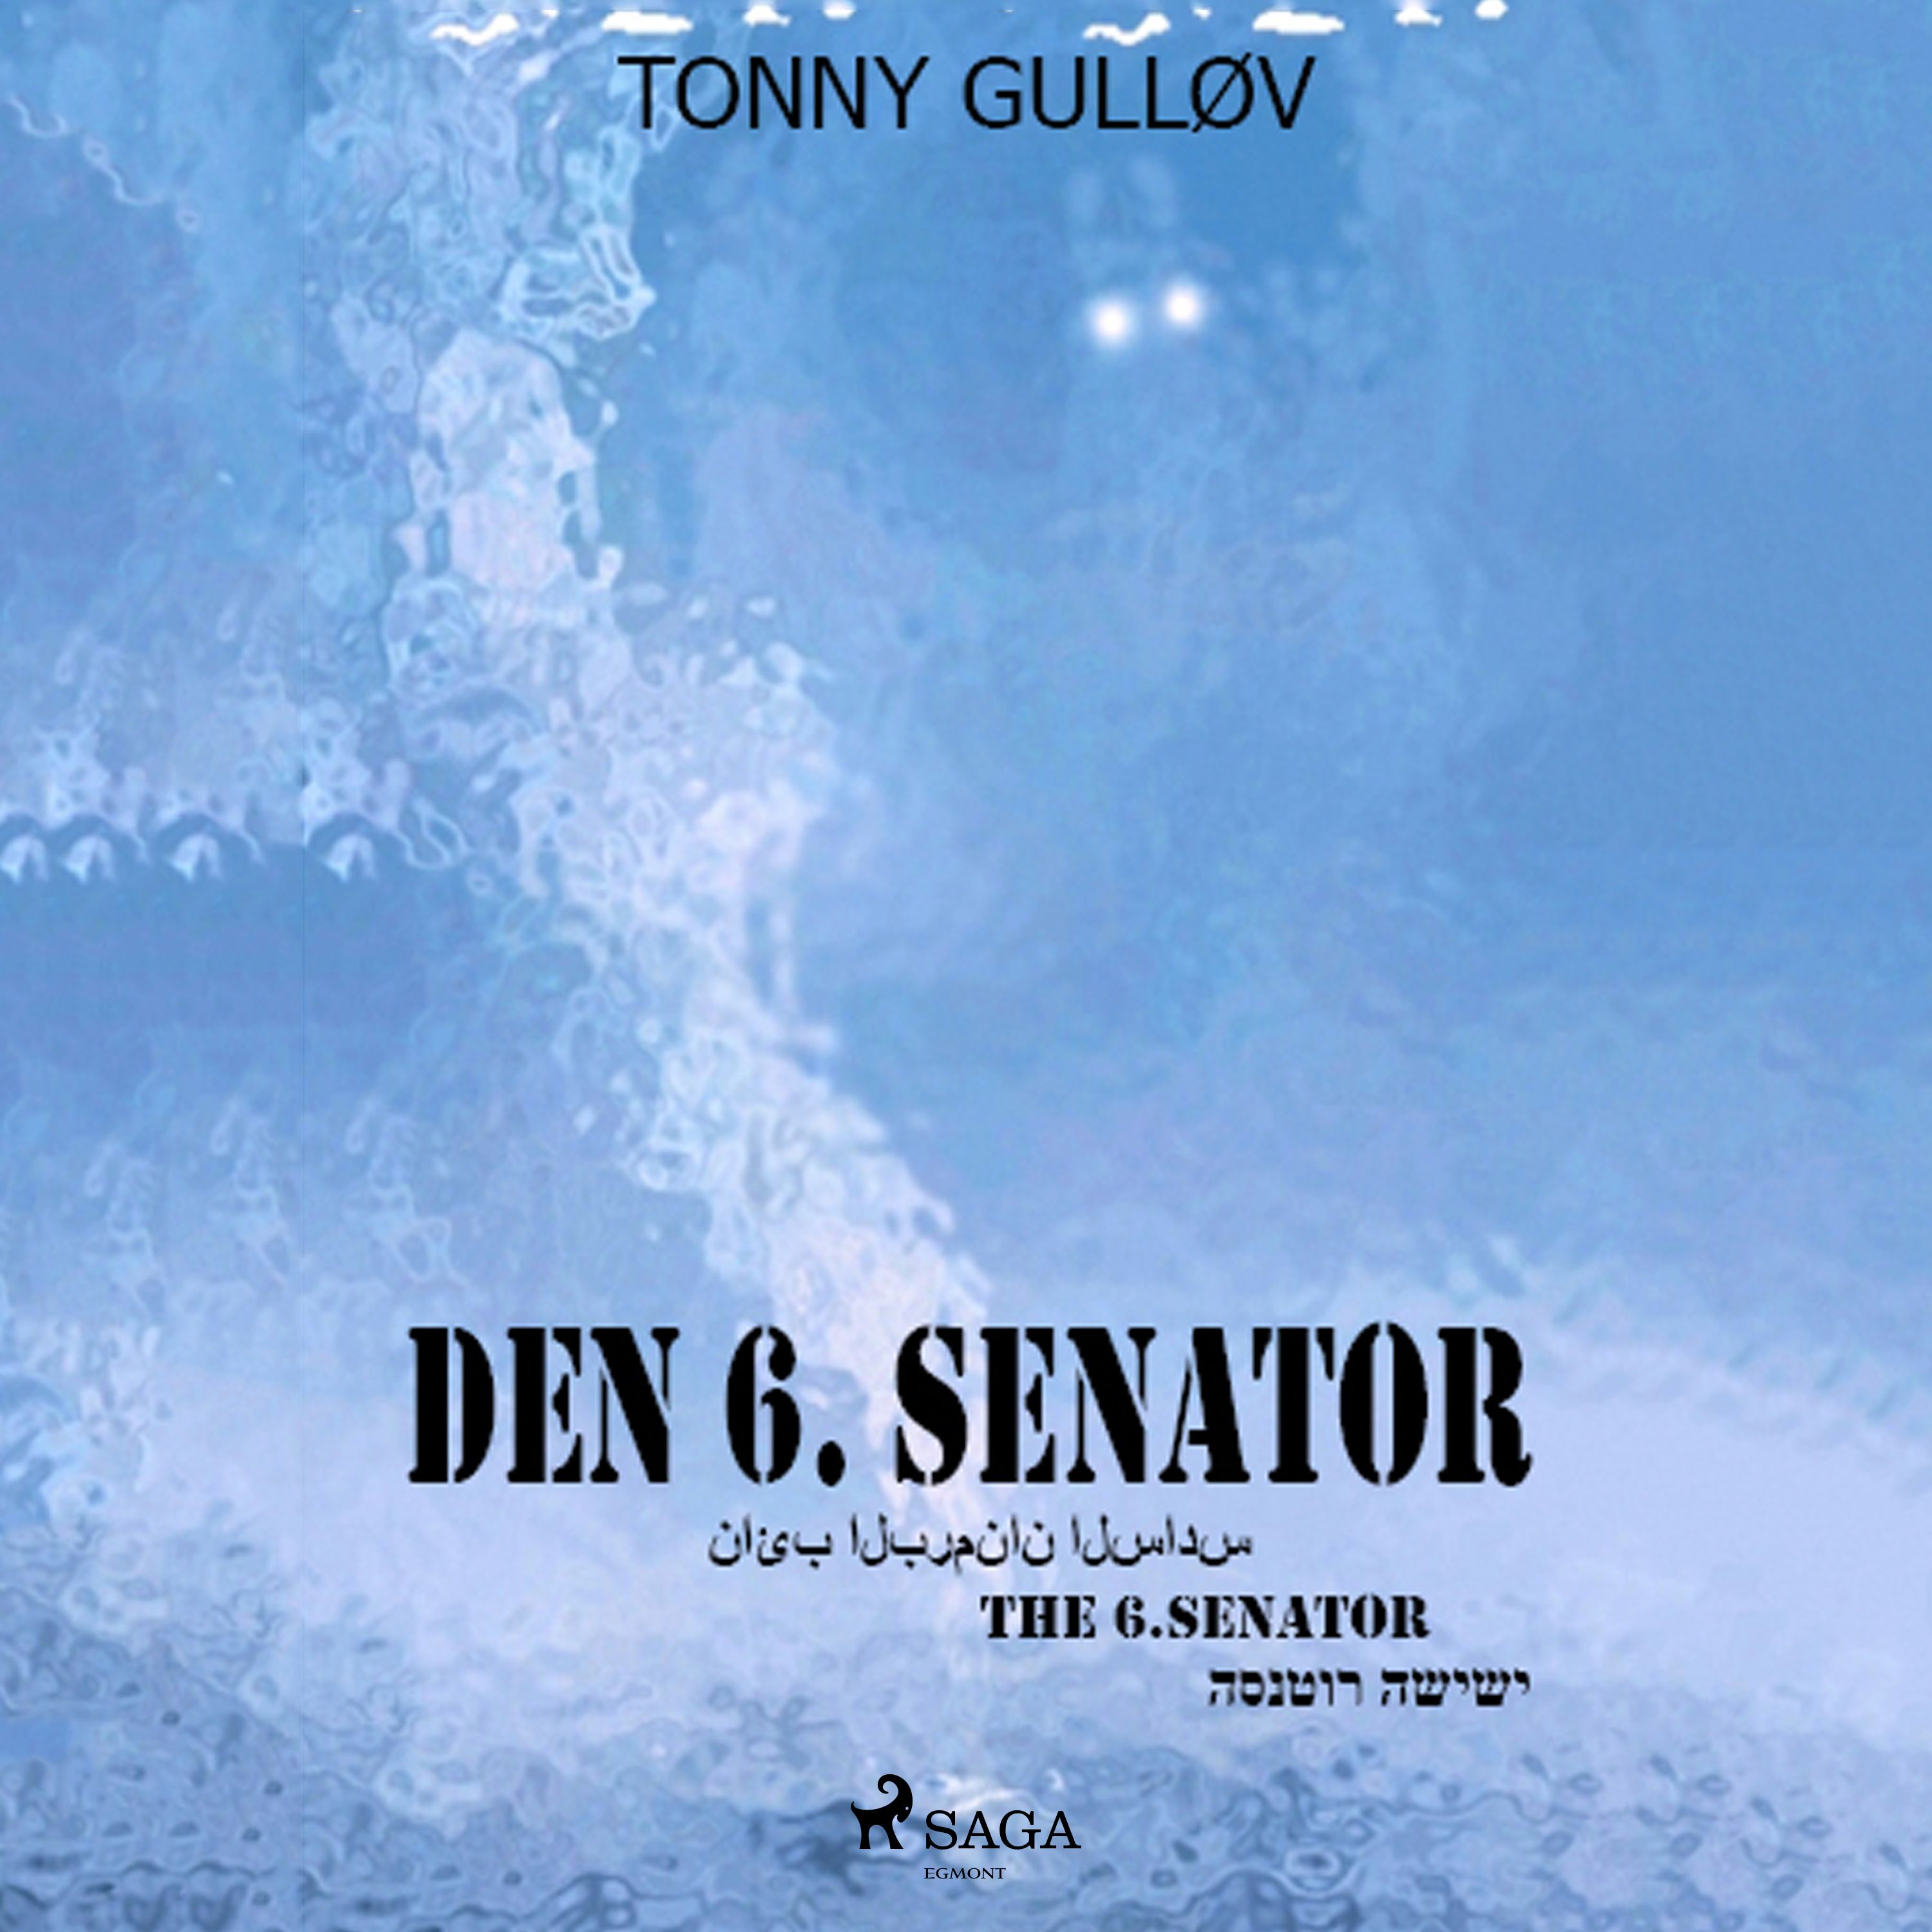 Den 6. senator, ljudbok av Tonny Gulløv